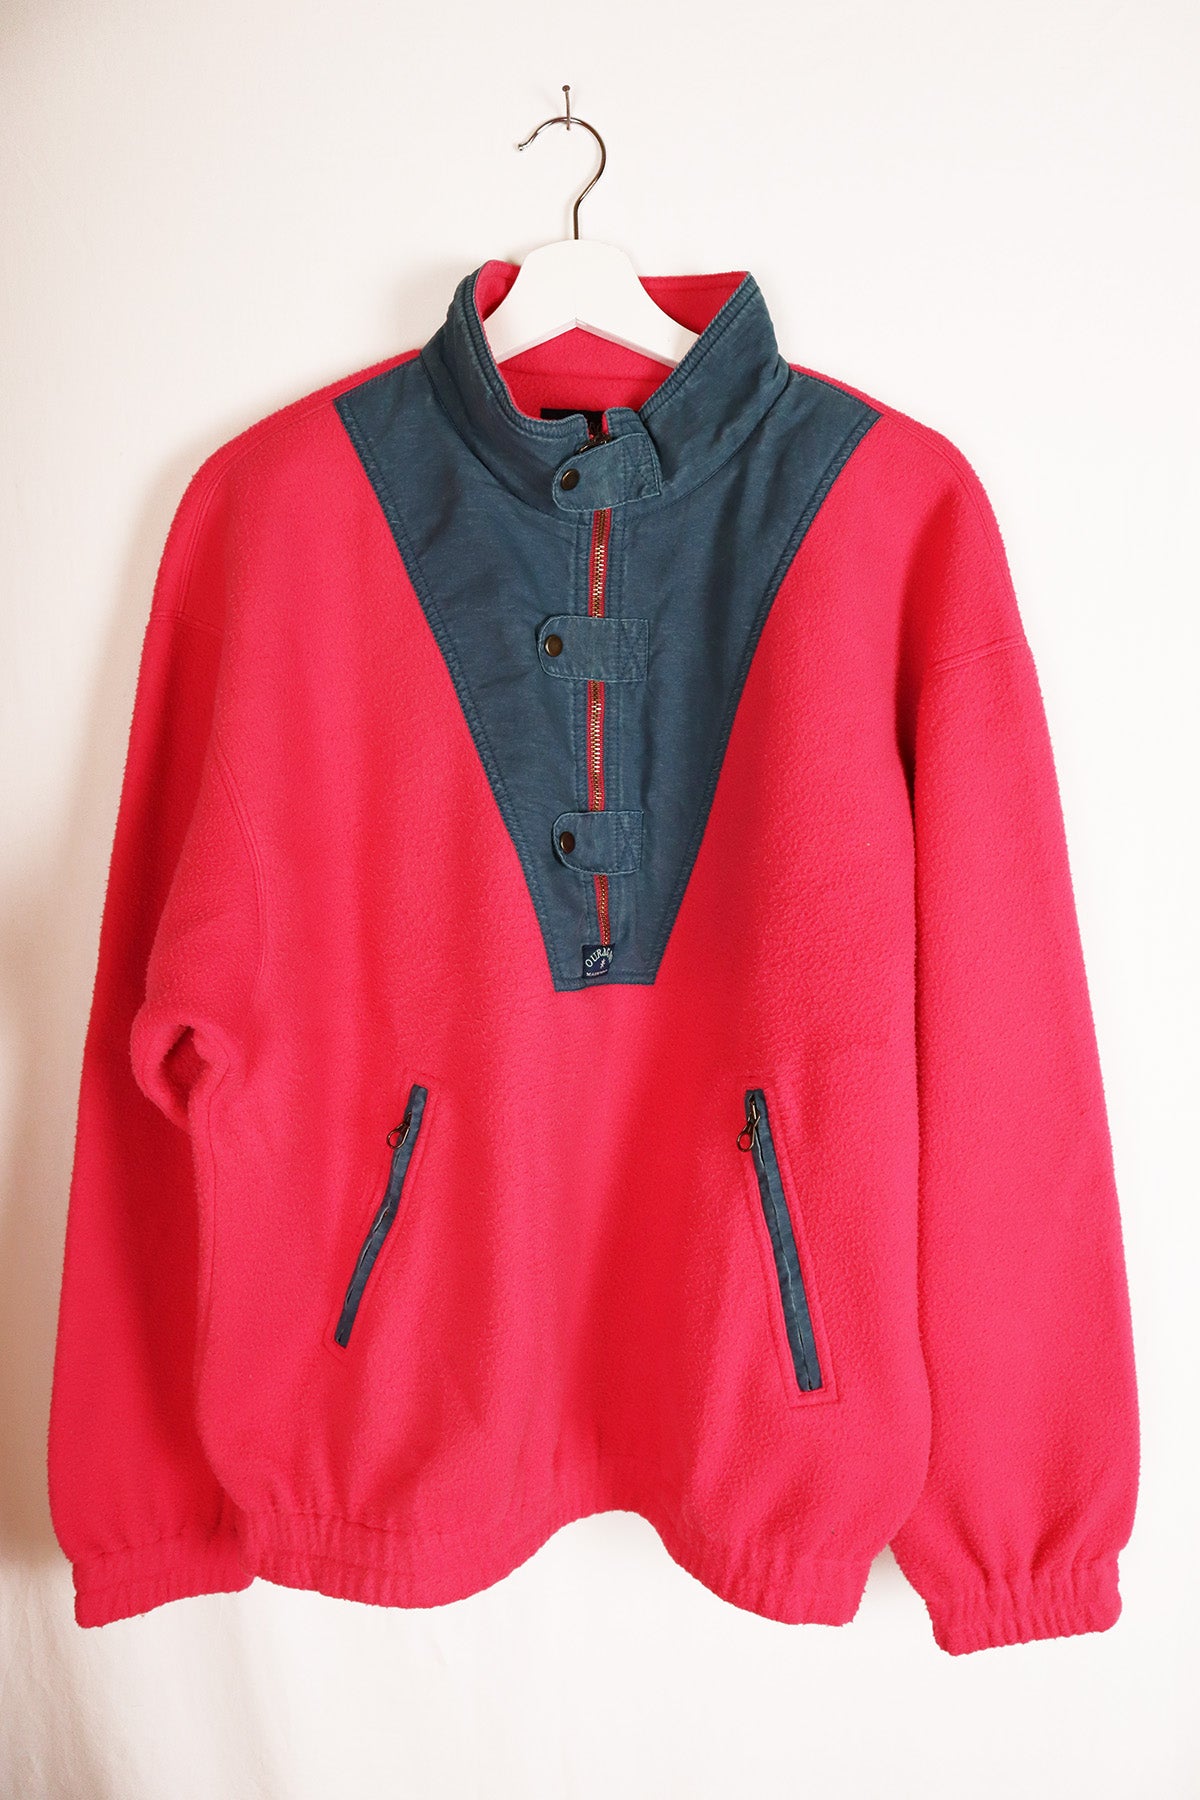 Fleece Pullover Vintage Rot ( Gr. M/L )